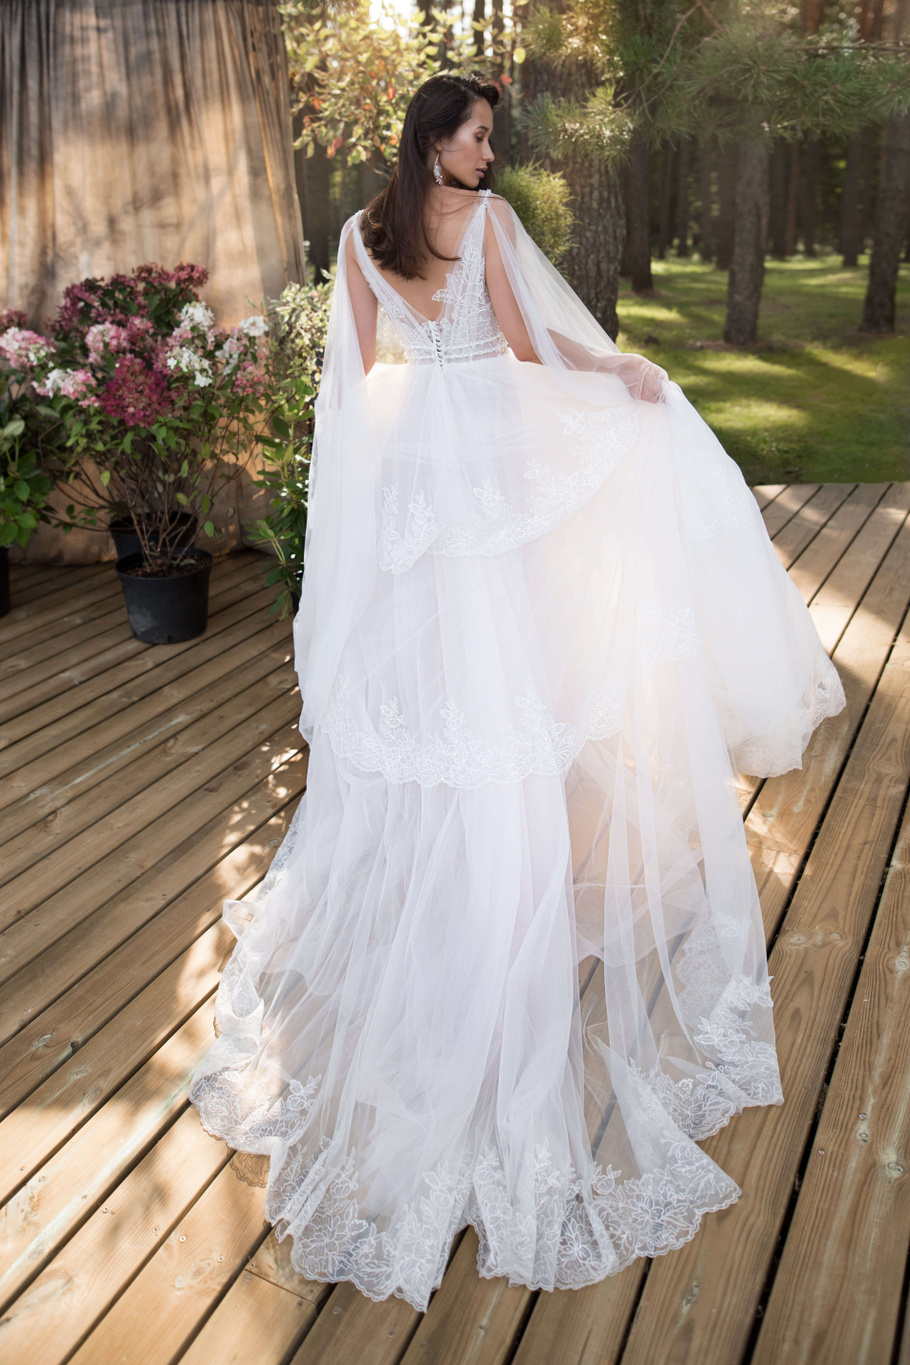 Купить свадебное платье «Николя» Бламмо Биамо из коллекции Нимфа 2020 года в Нижнем Новгороде